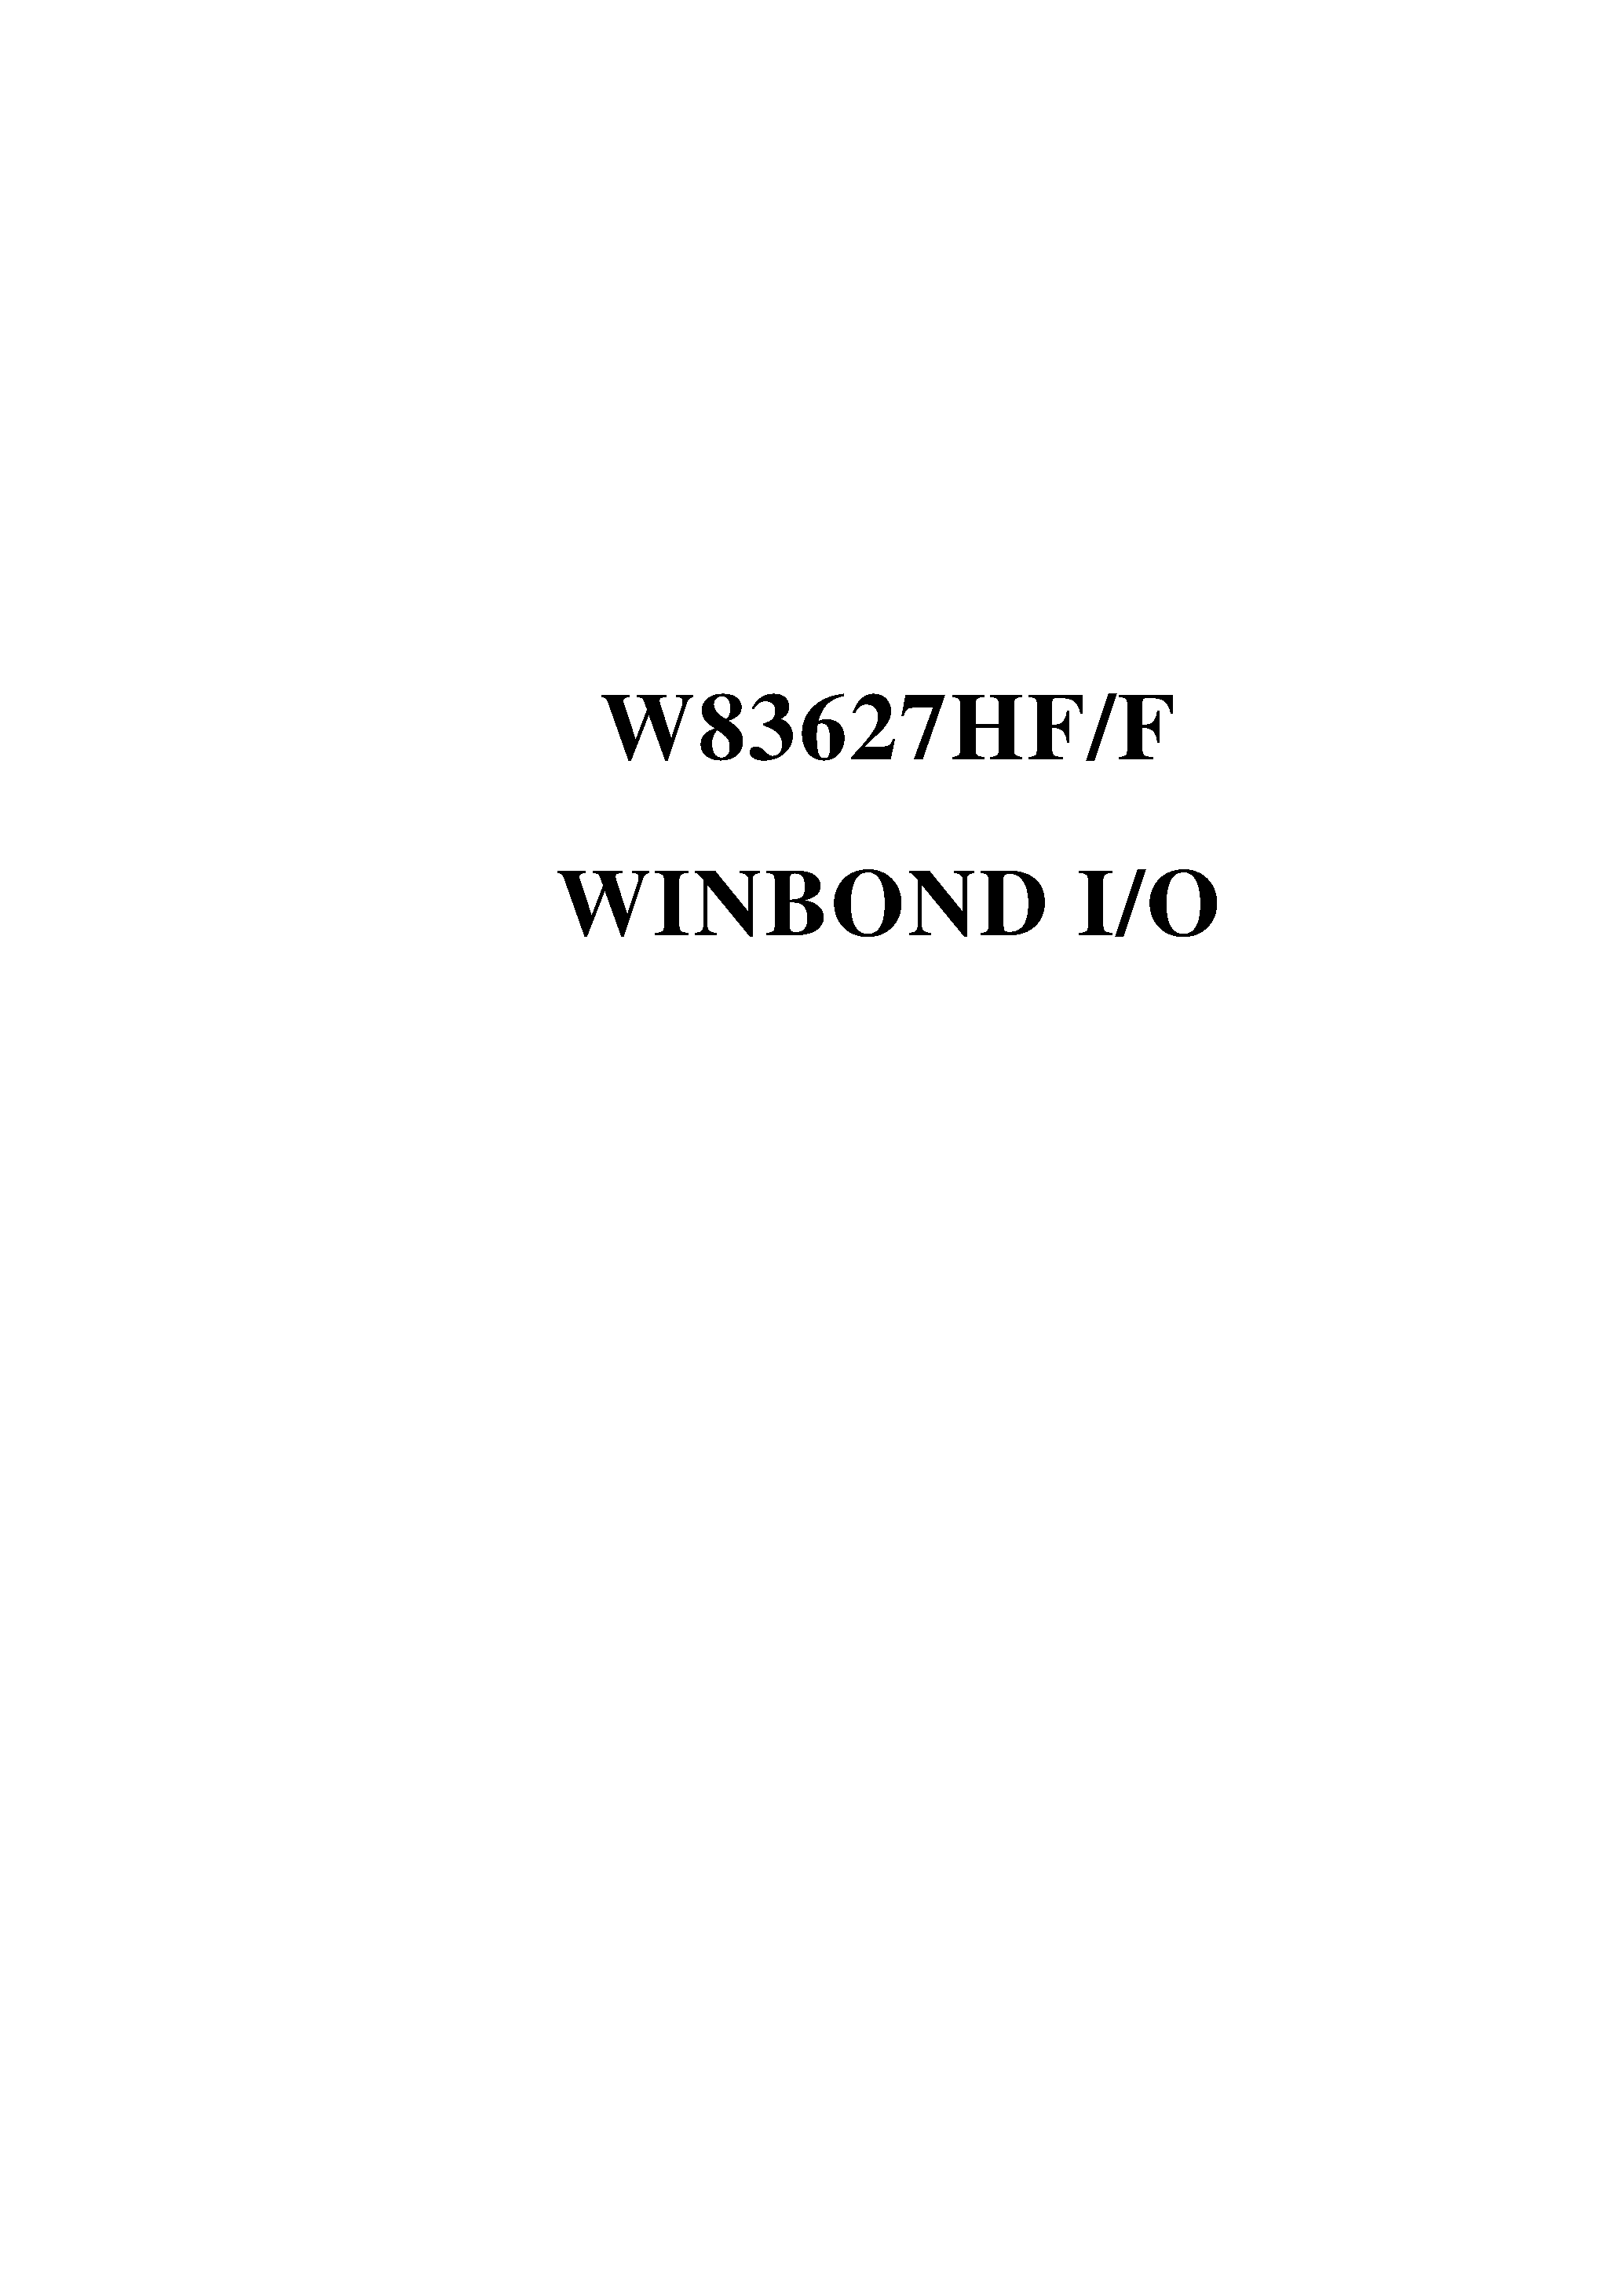 Datasheet W83627HF-AW - WINBOND I/O page 1